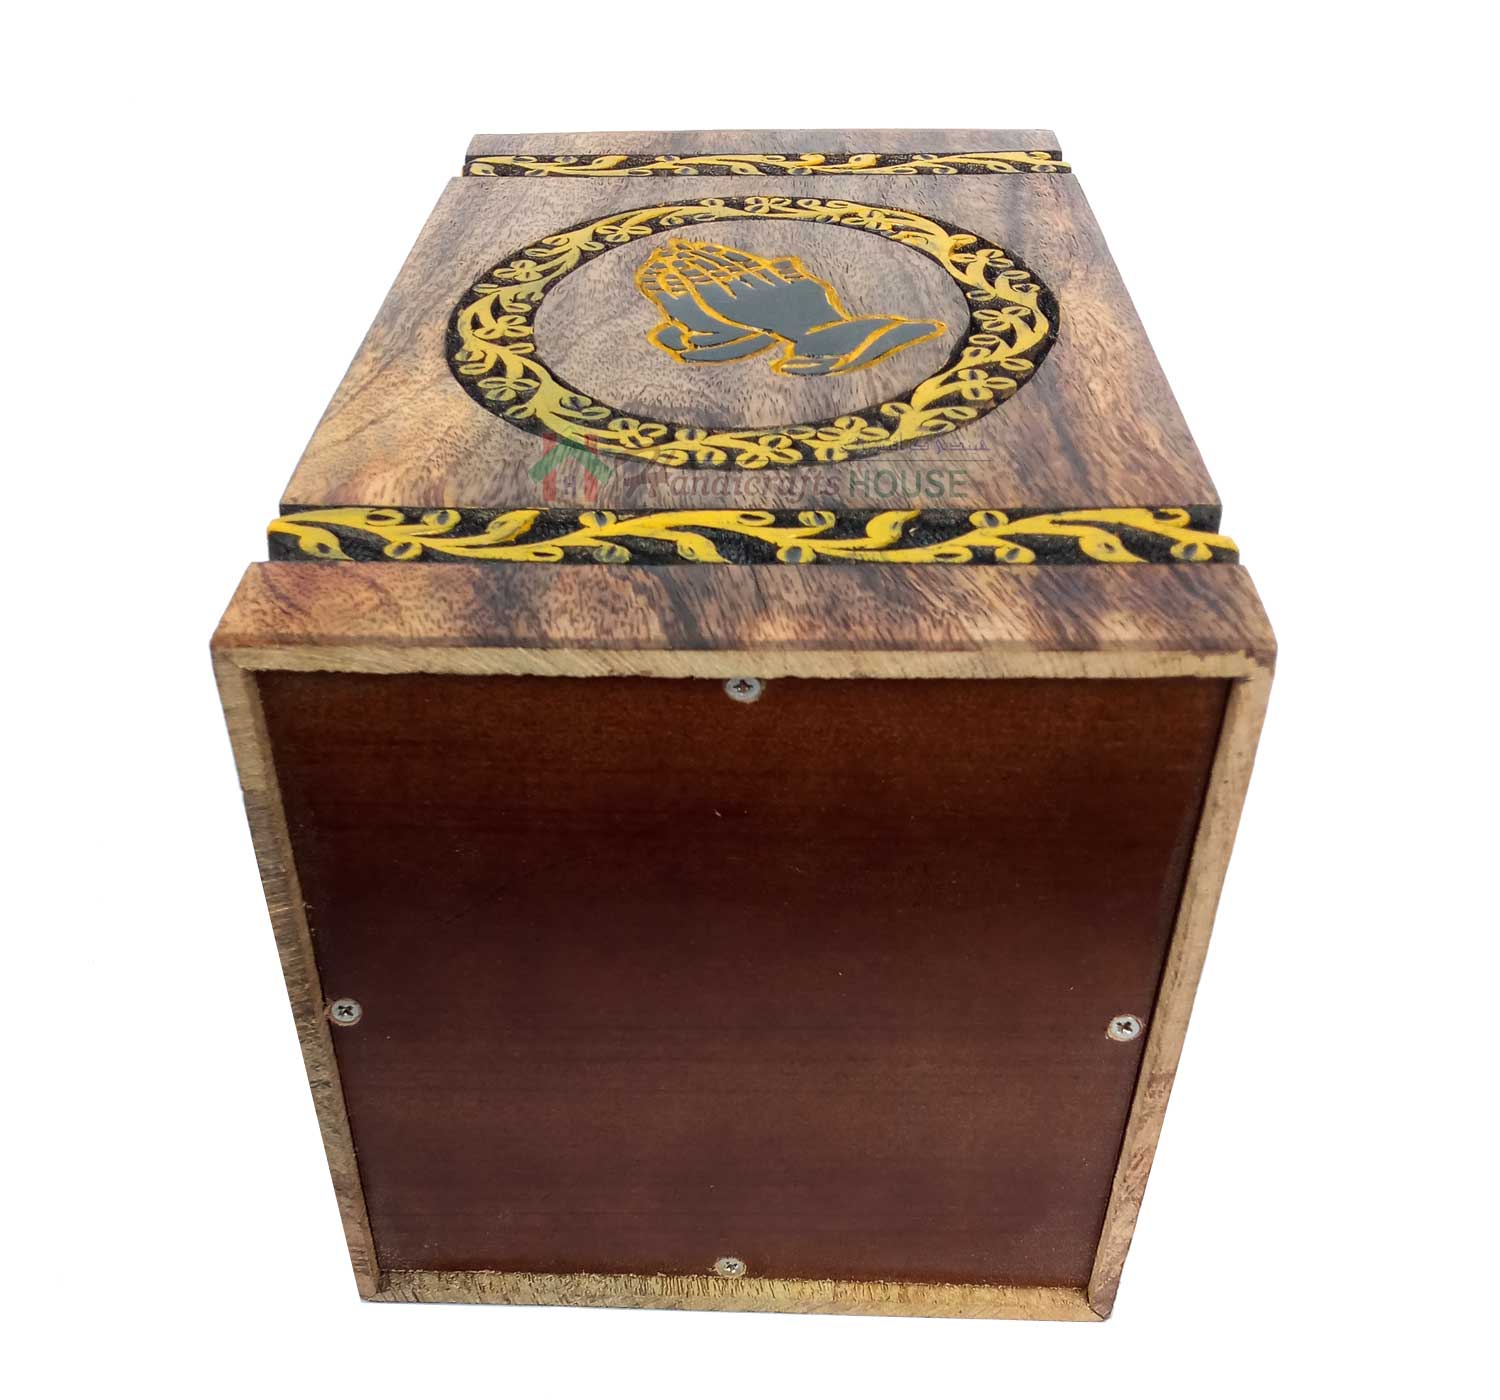 Cremation Boxes, Wooden Urns For Adult, Wood Keepsake Urn, Decor Casket